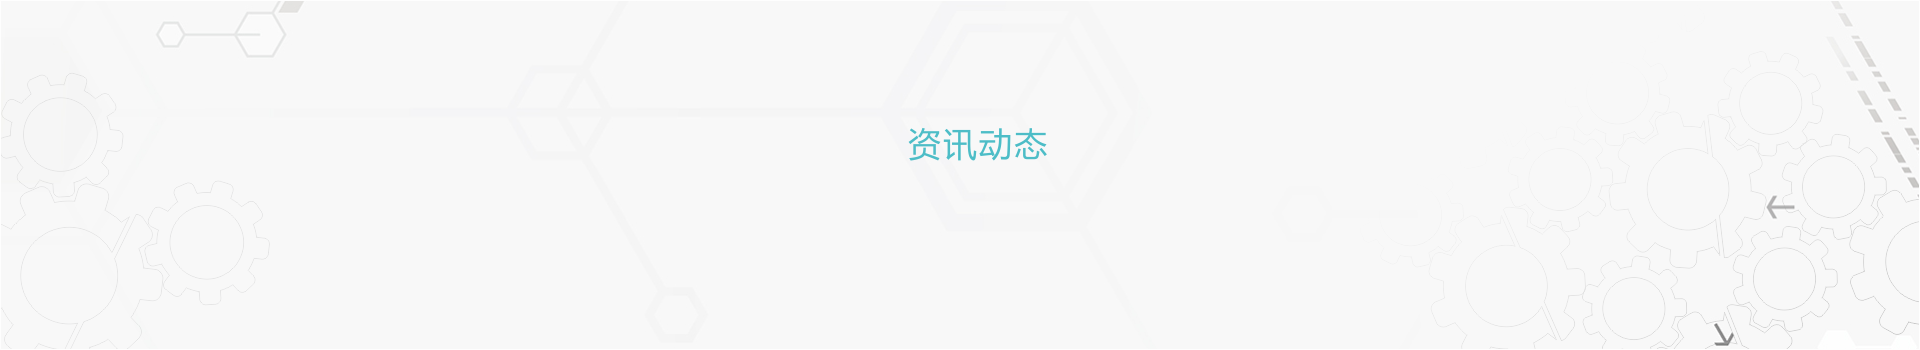 亚洲新品首发进行时 NEPCON China 2013开幕在即